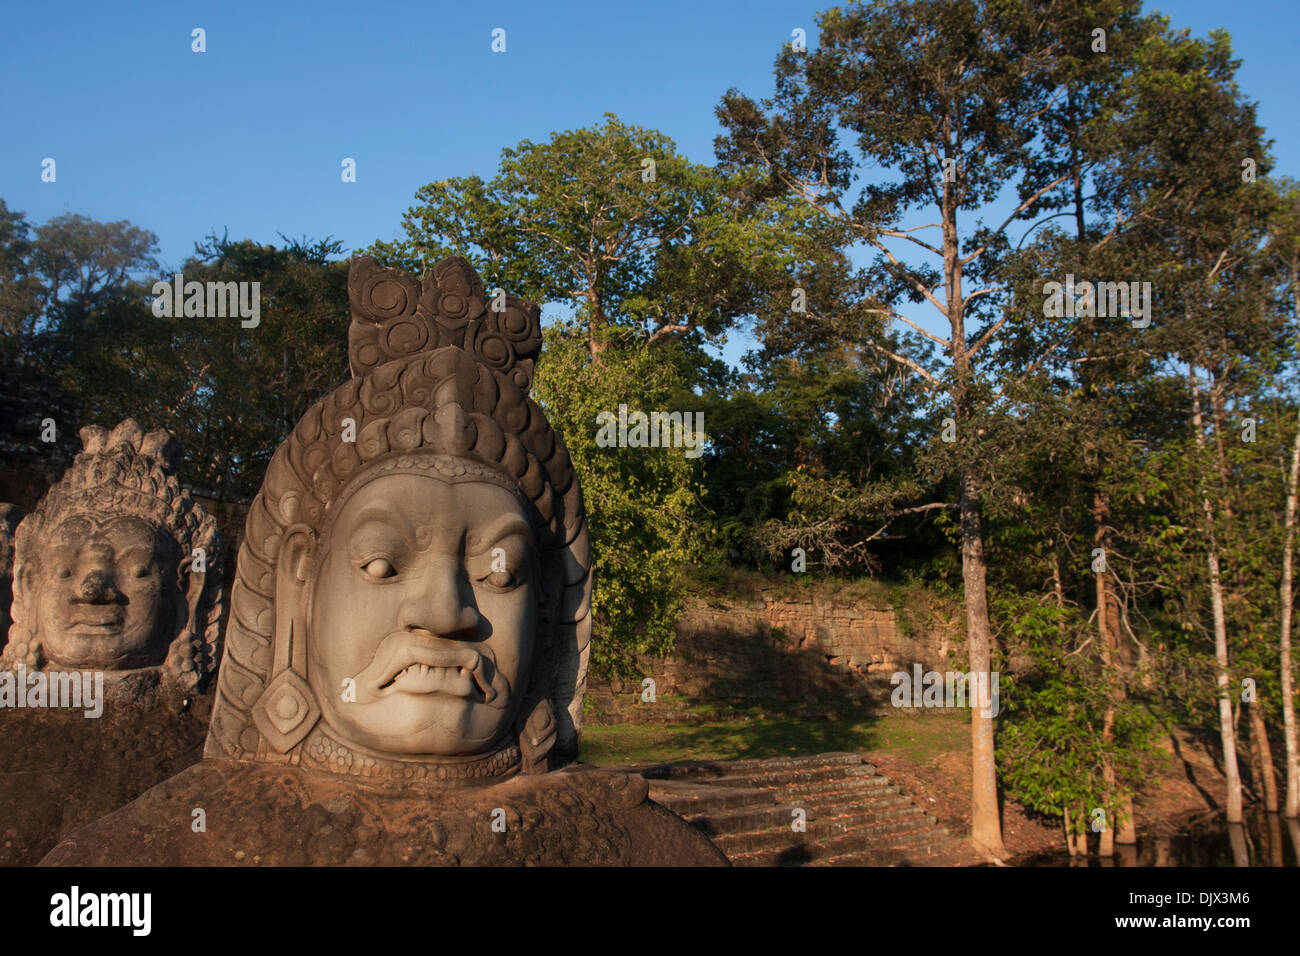 Stone warrior heads at Angkor Thom, Cambodia. Stock Photo